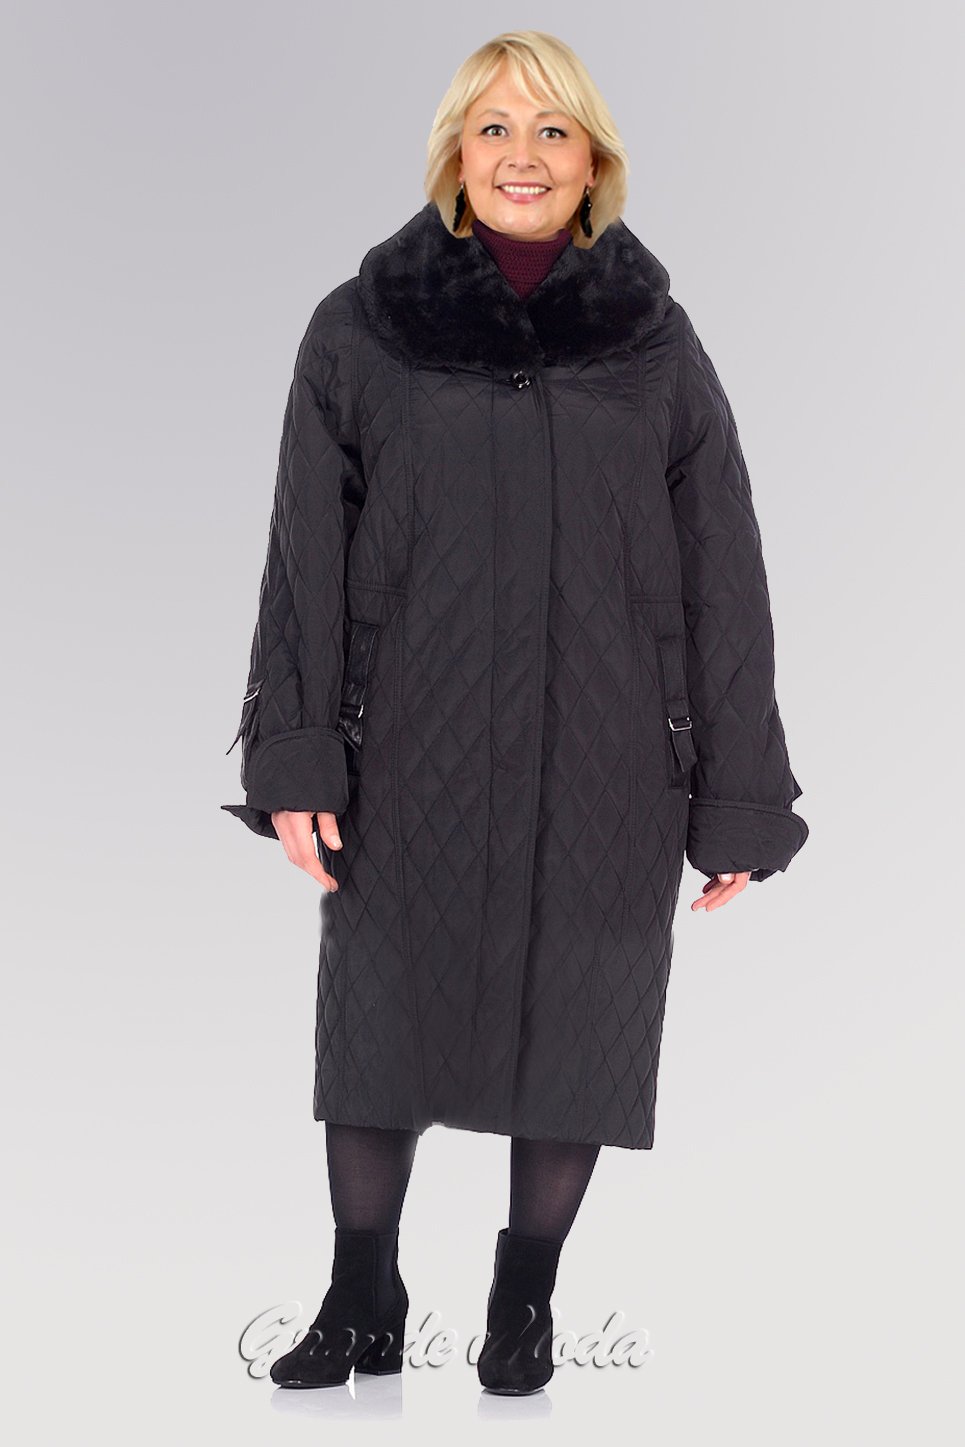 Женский зимнее пальто большого размера купить. Пальто женское больших размеров. Пальто женское зимнее для полных женщин. Зимнее пальто для полных женщин. Зимнее пальто для полных.